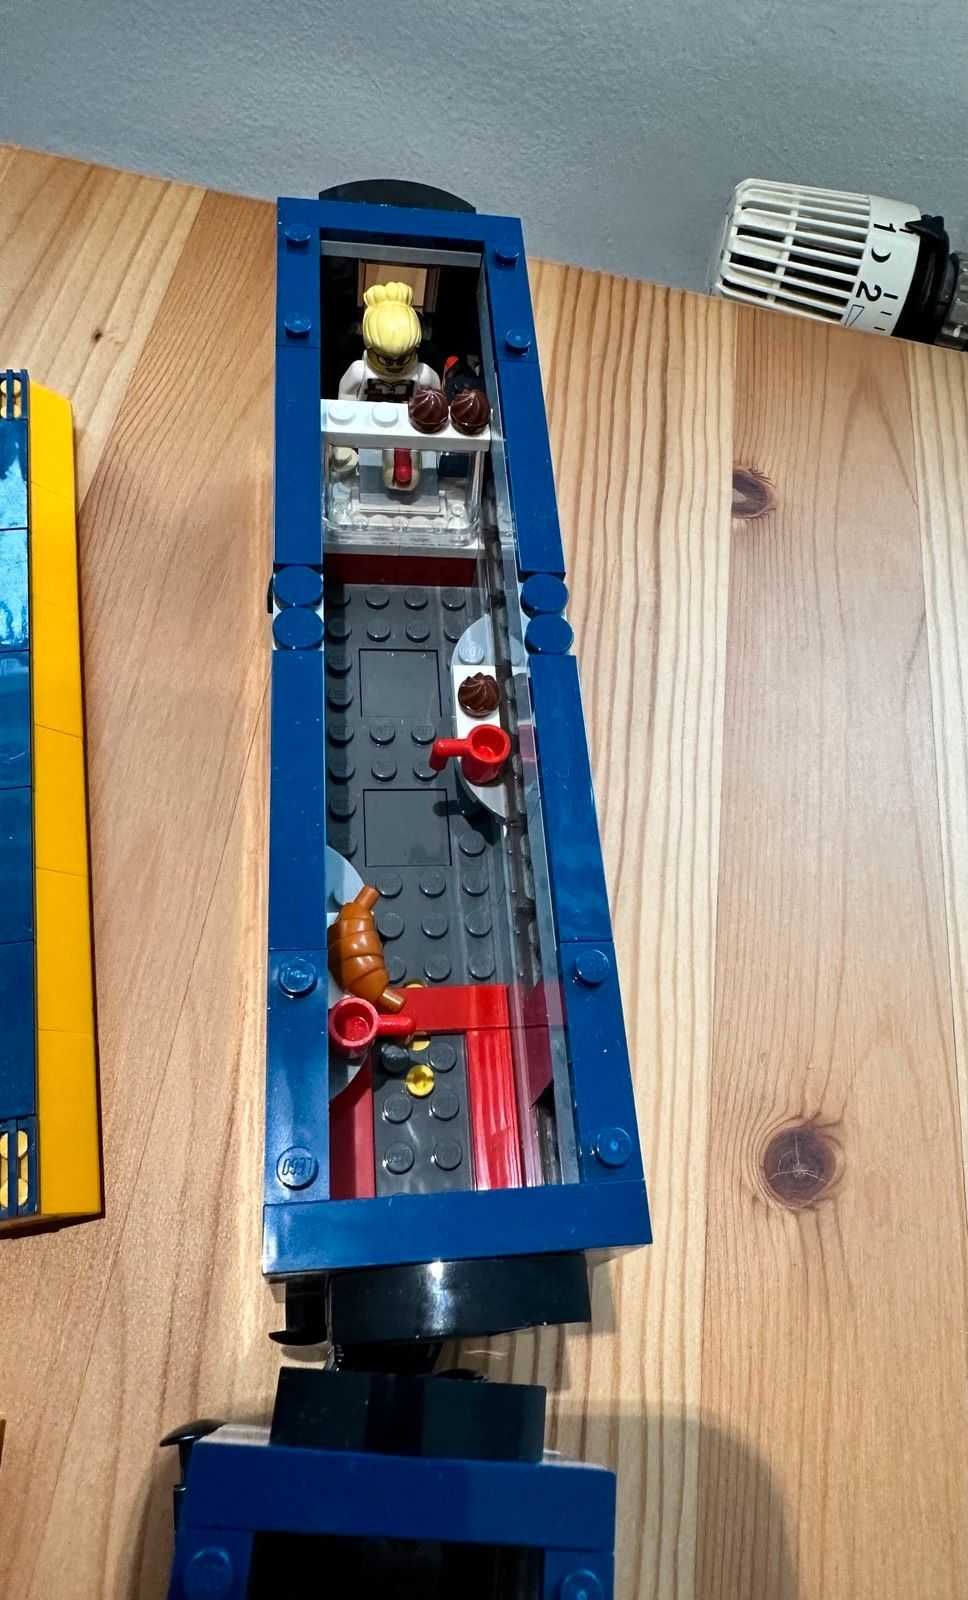 Конструктор LEGO City Trains 60197 Пассажирский поезд (Оригинал)